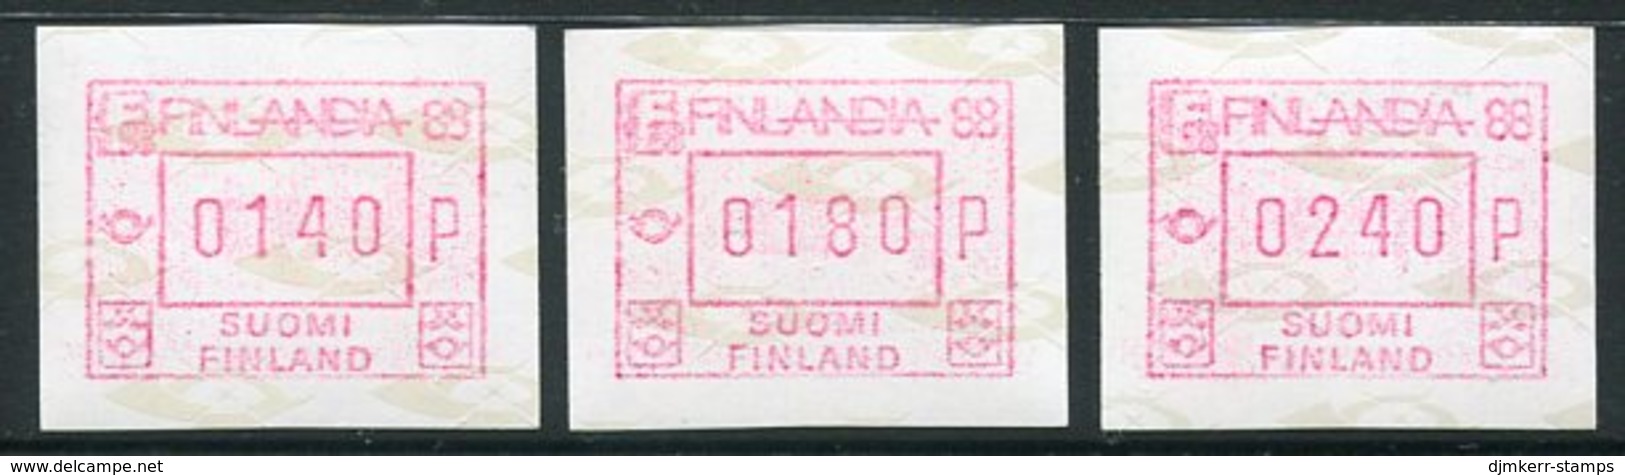 FINLAND 1986 FINLANDIA '88  ATM, Three Values MNH / **..  Michel 2 - Automatenmarken [ATM]